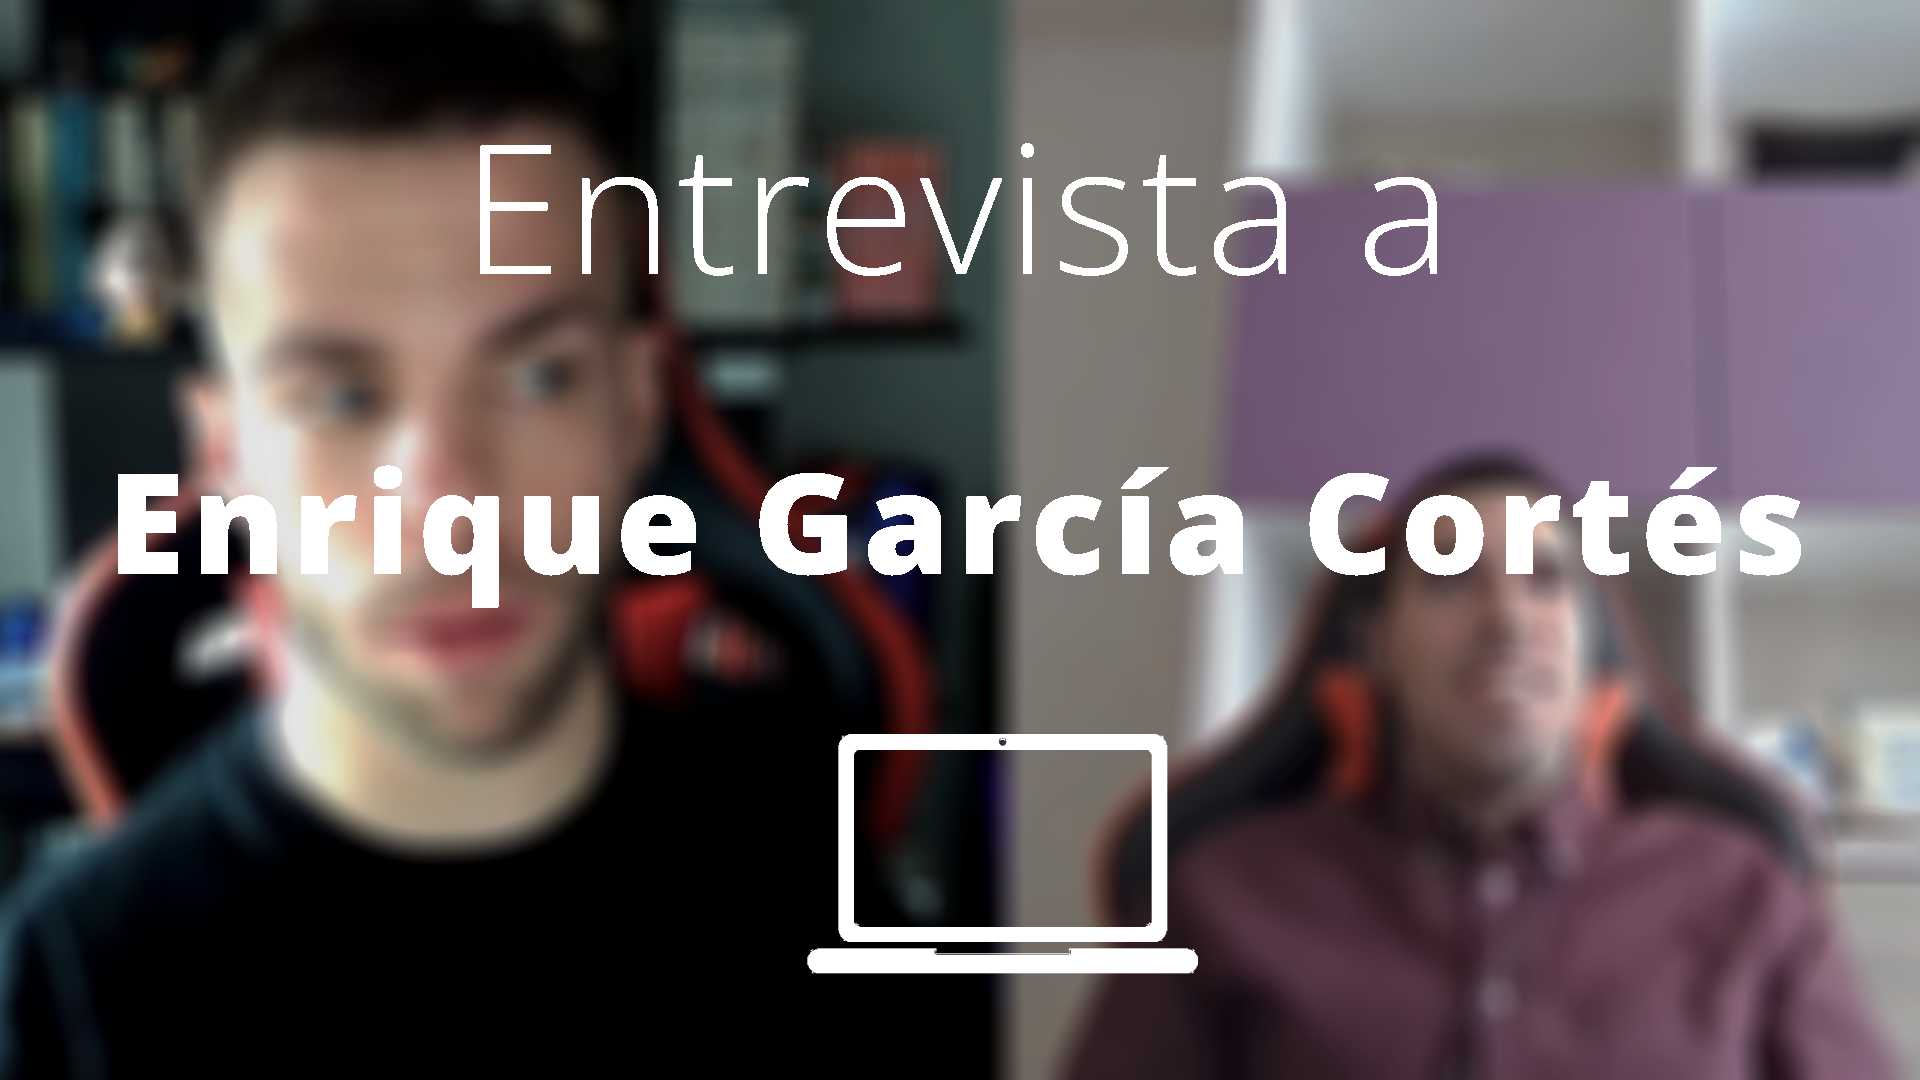 La ventanilla del kiosco #4: Hablamos de videojuegos accesibles con Enrique García Cortés